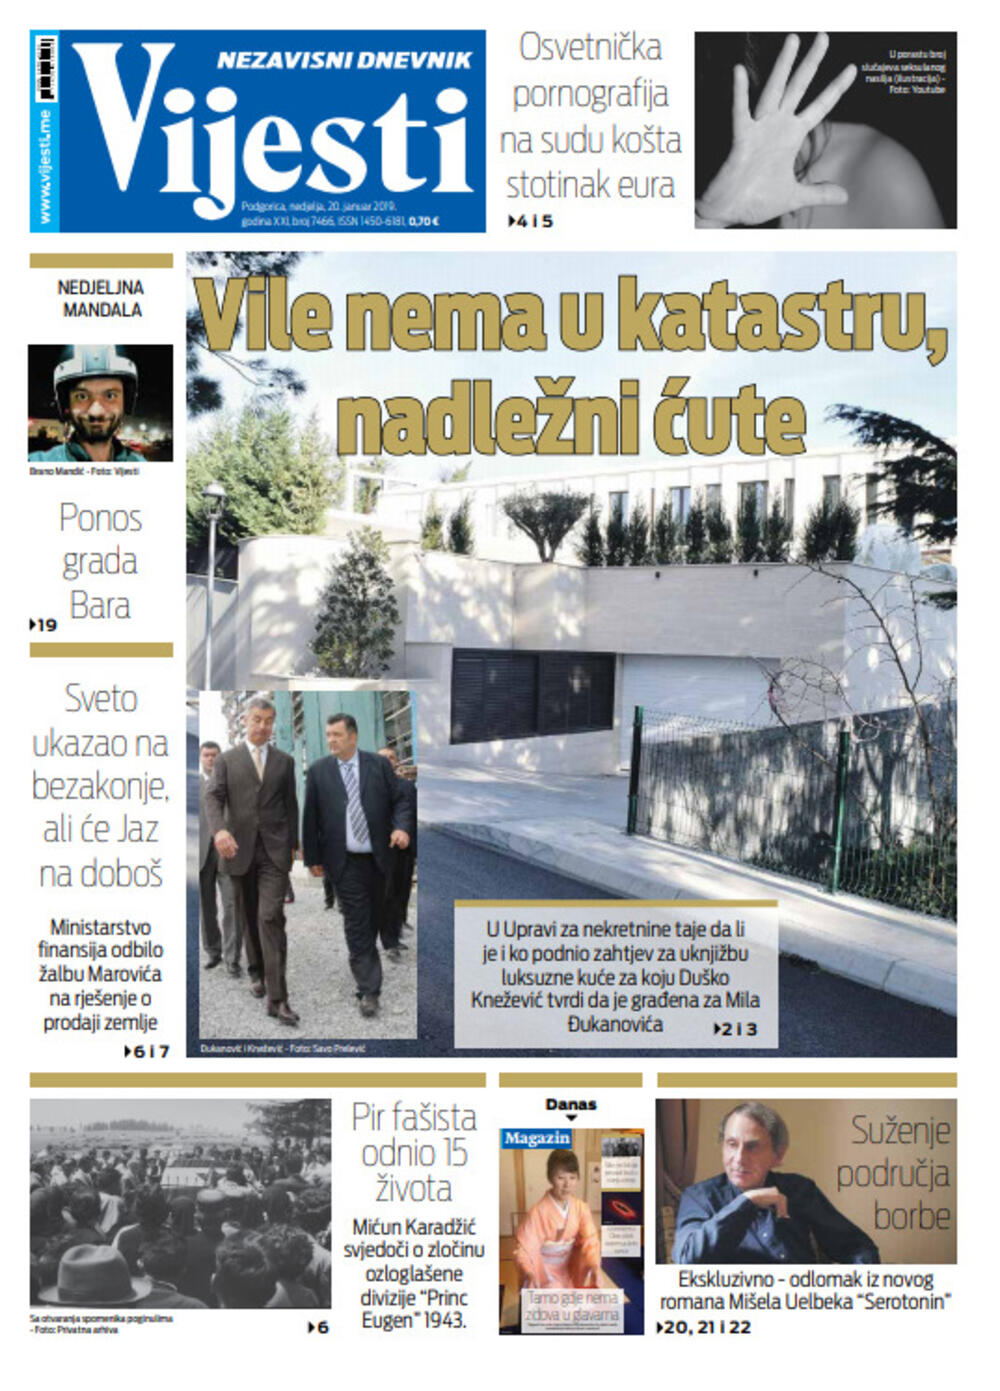 Naslovna strana "Vijesti" za 20. januar, Foto: Vijesti